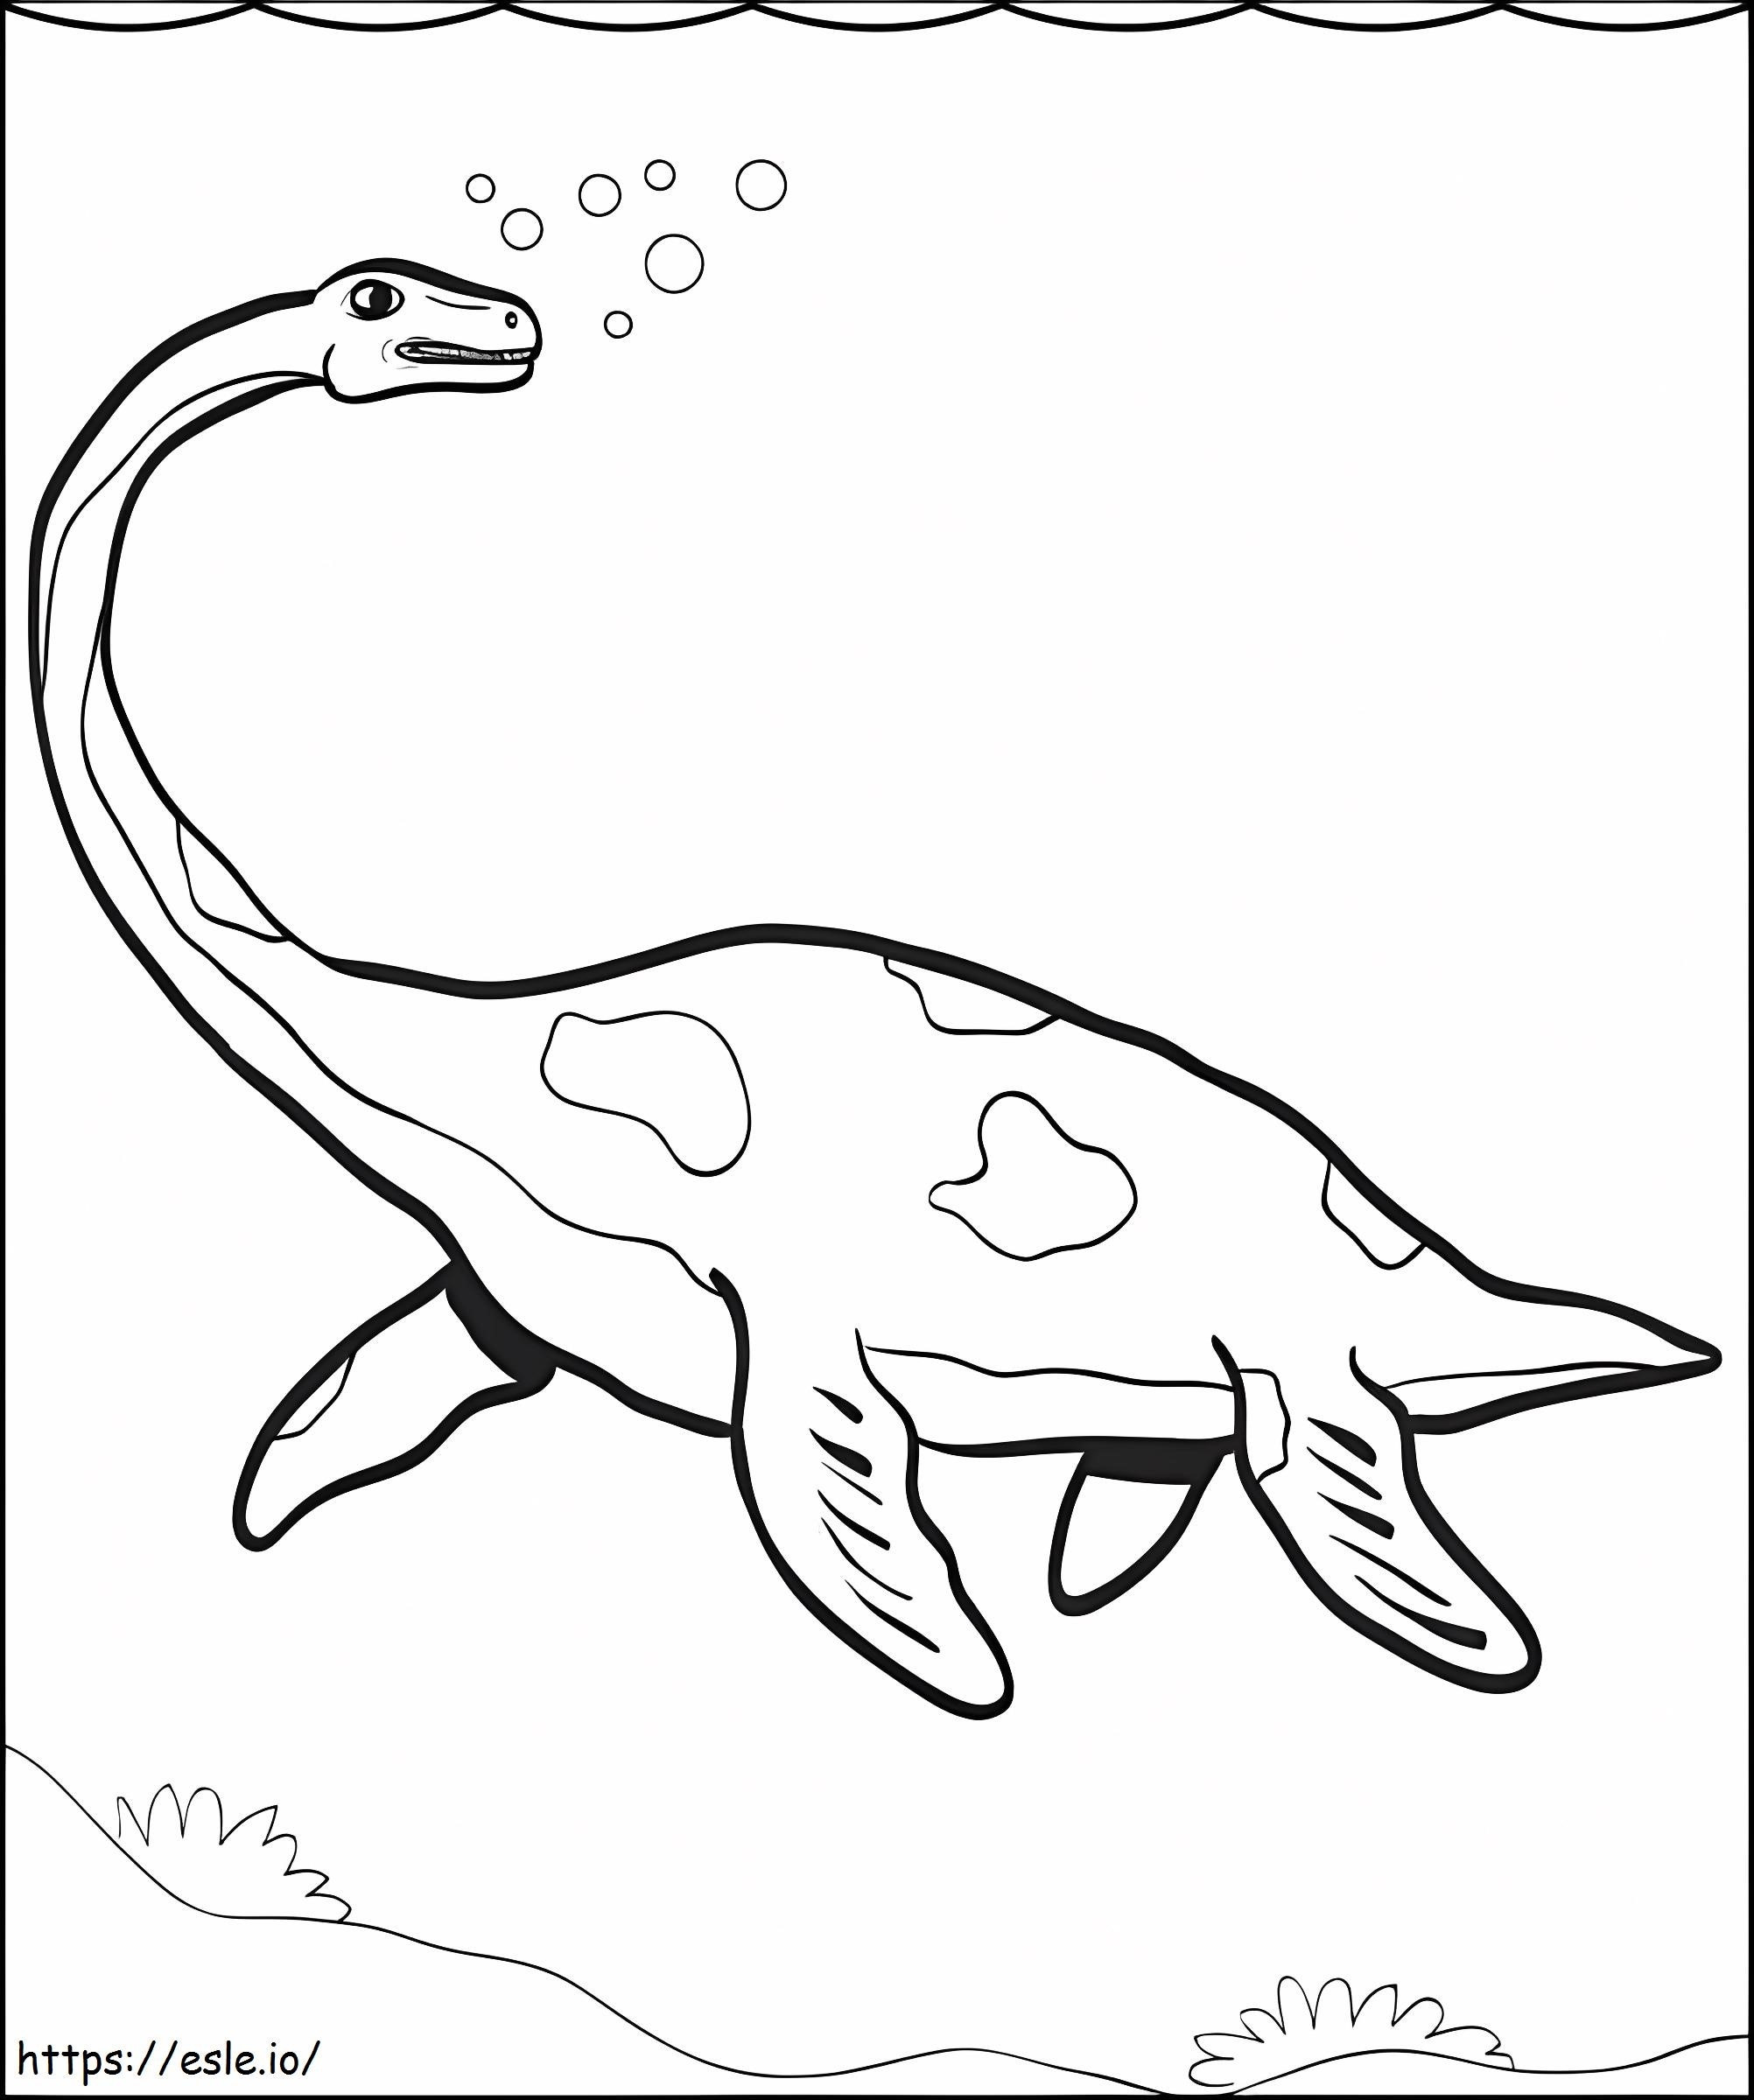 Plesiosaurus víz alatt kifestő